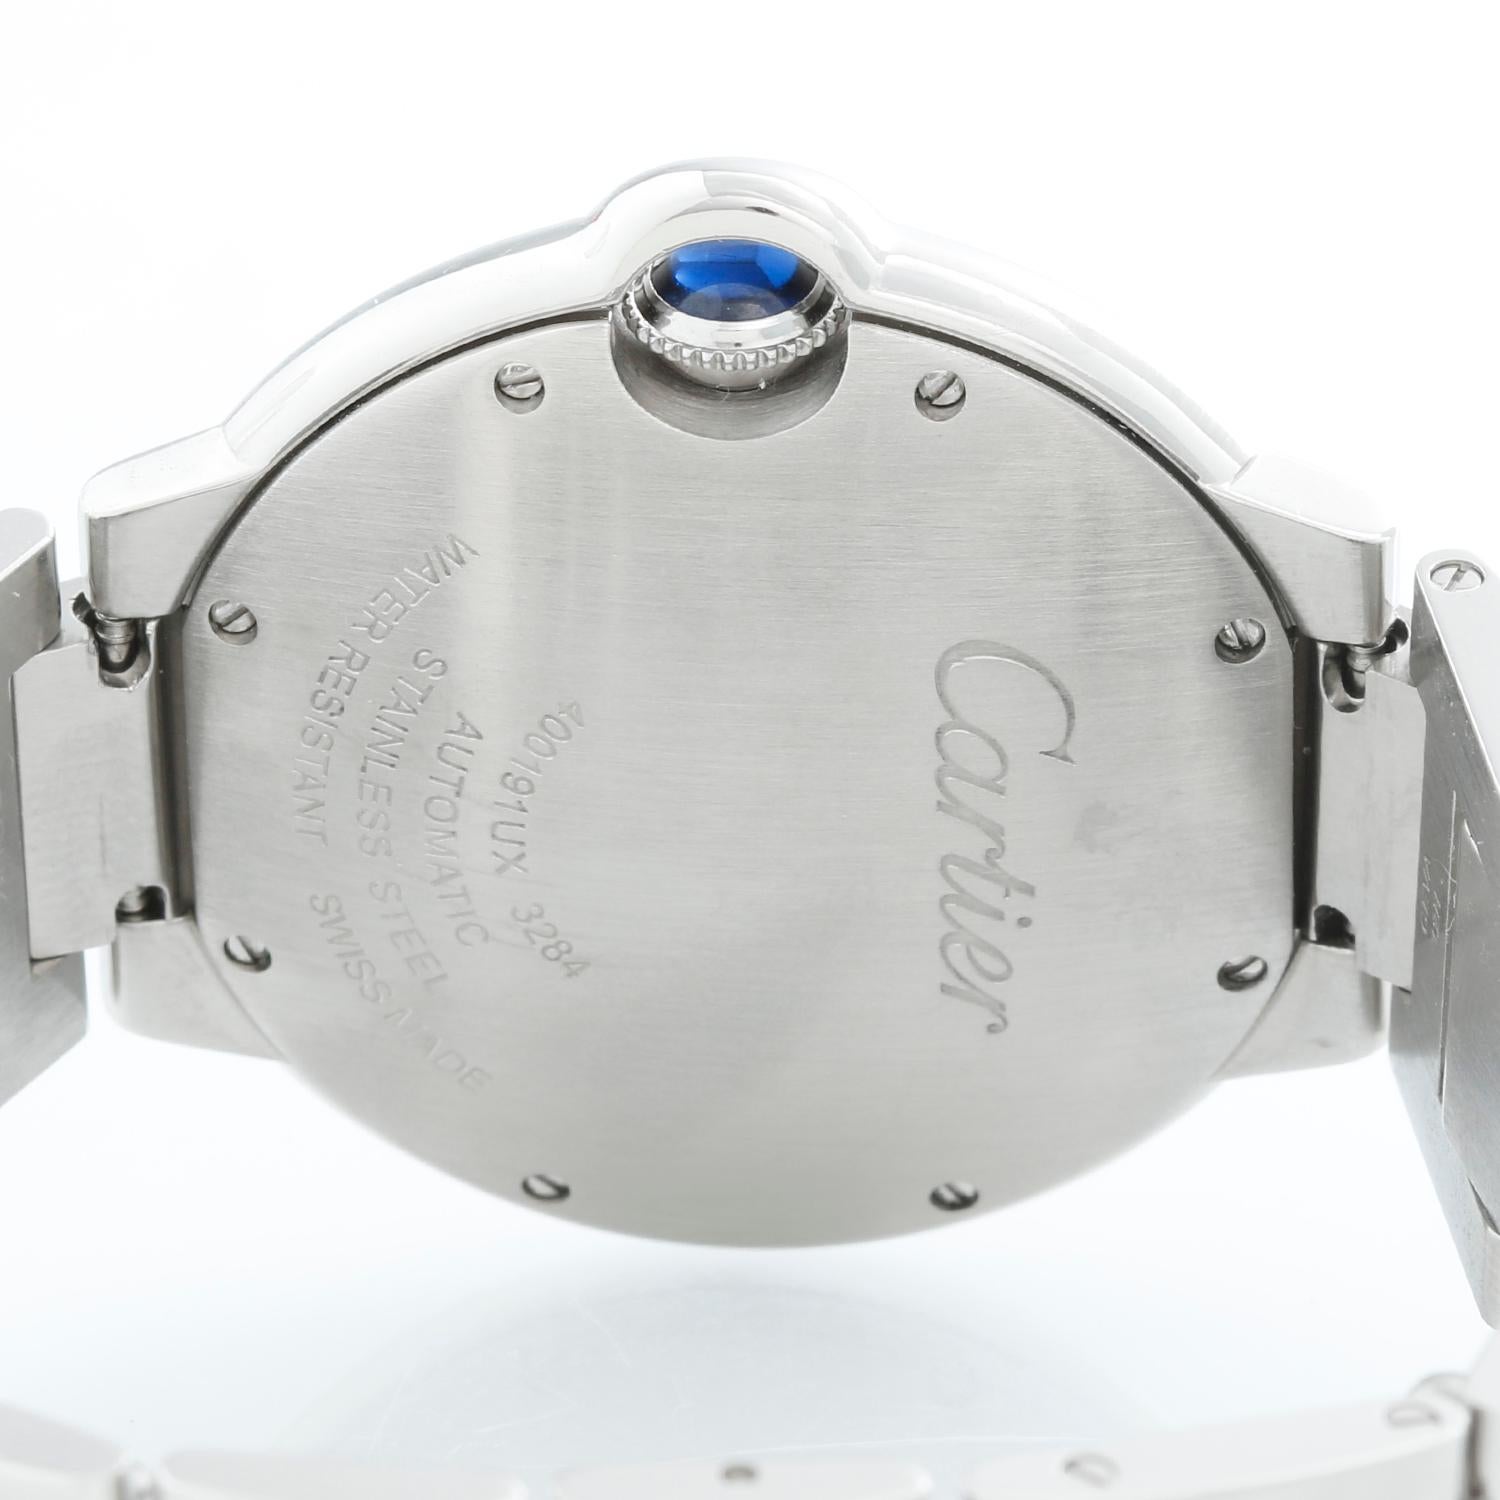 Women's Cartier Ballon Bleu Midsize Stainless Steel Watch W6920046 3284